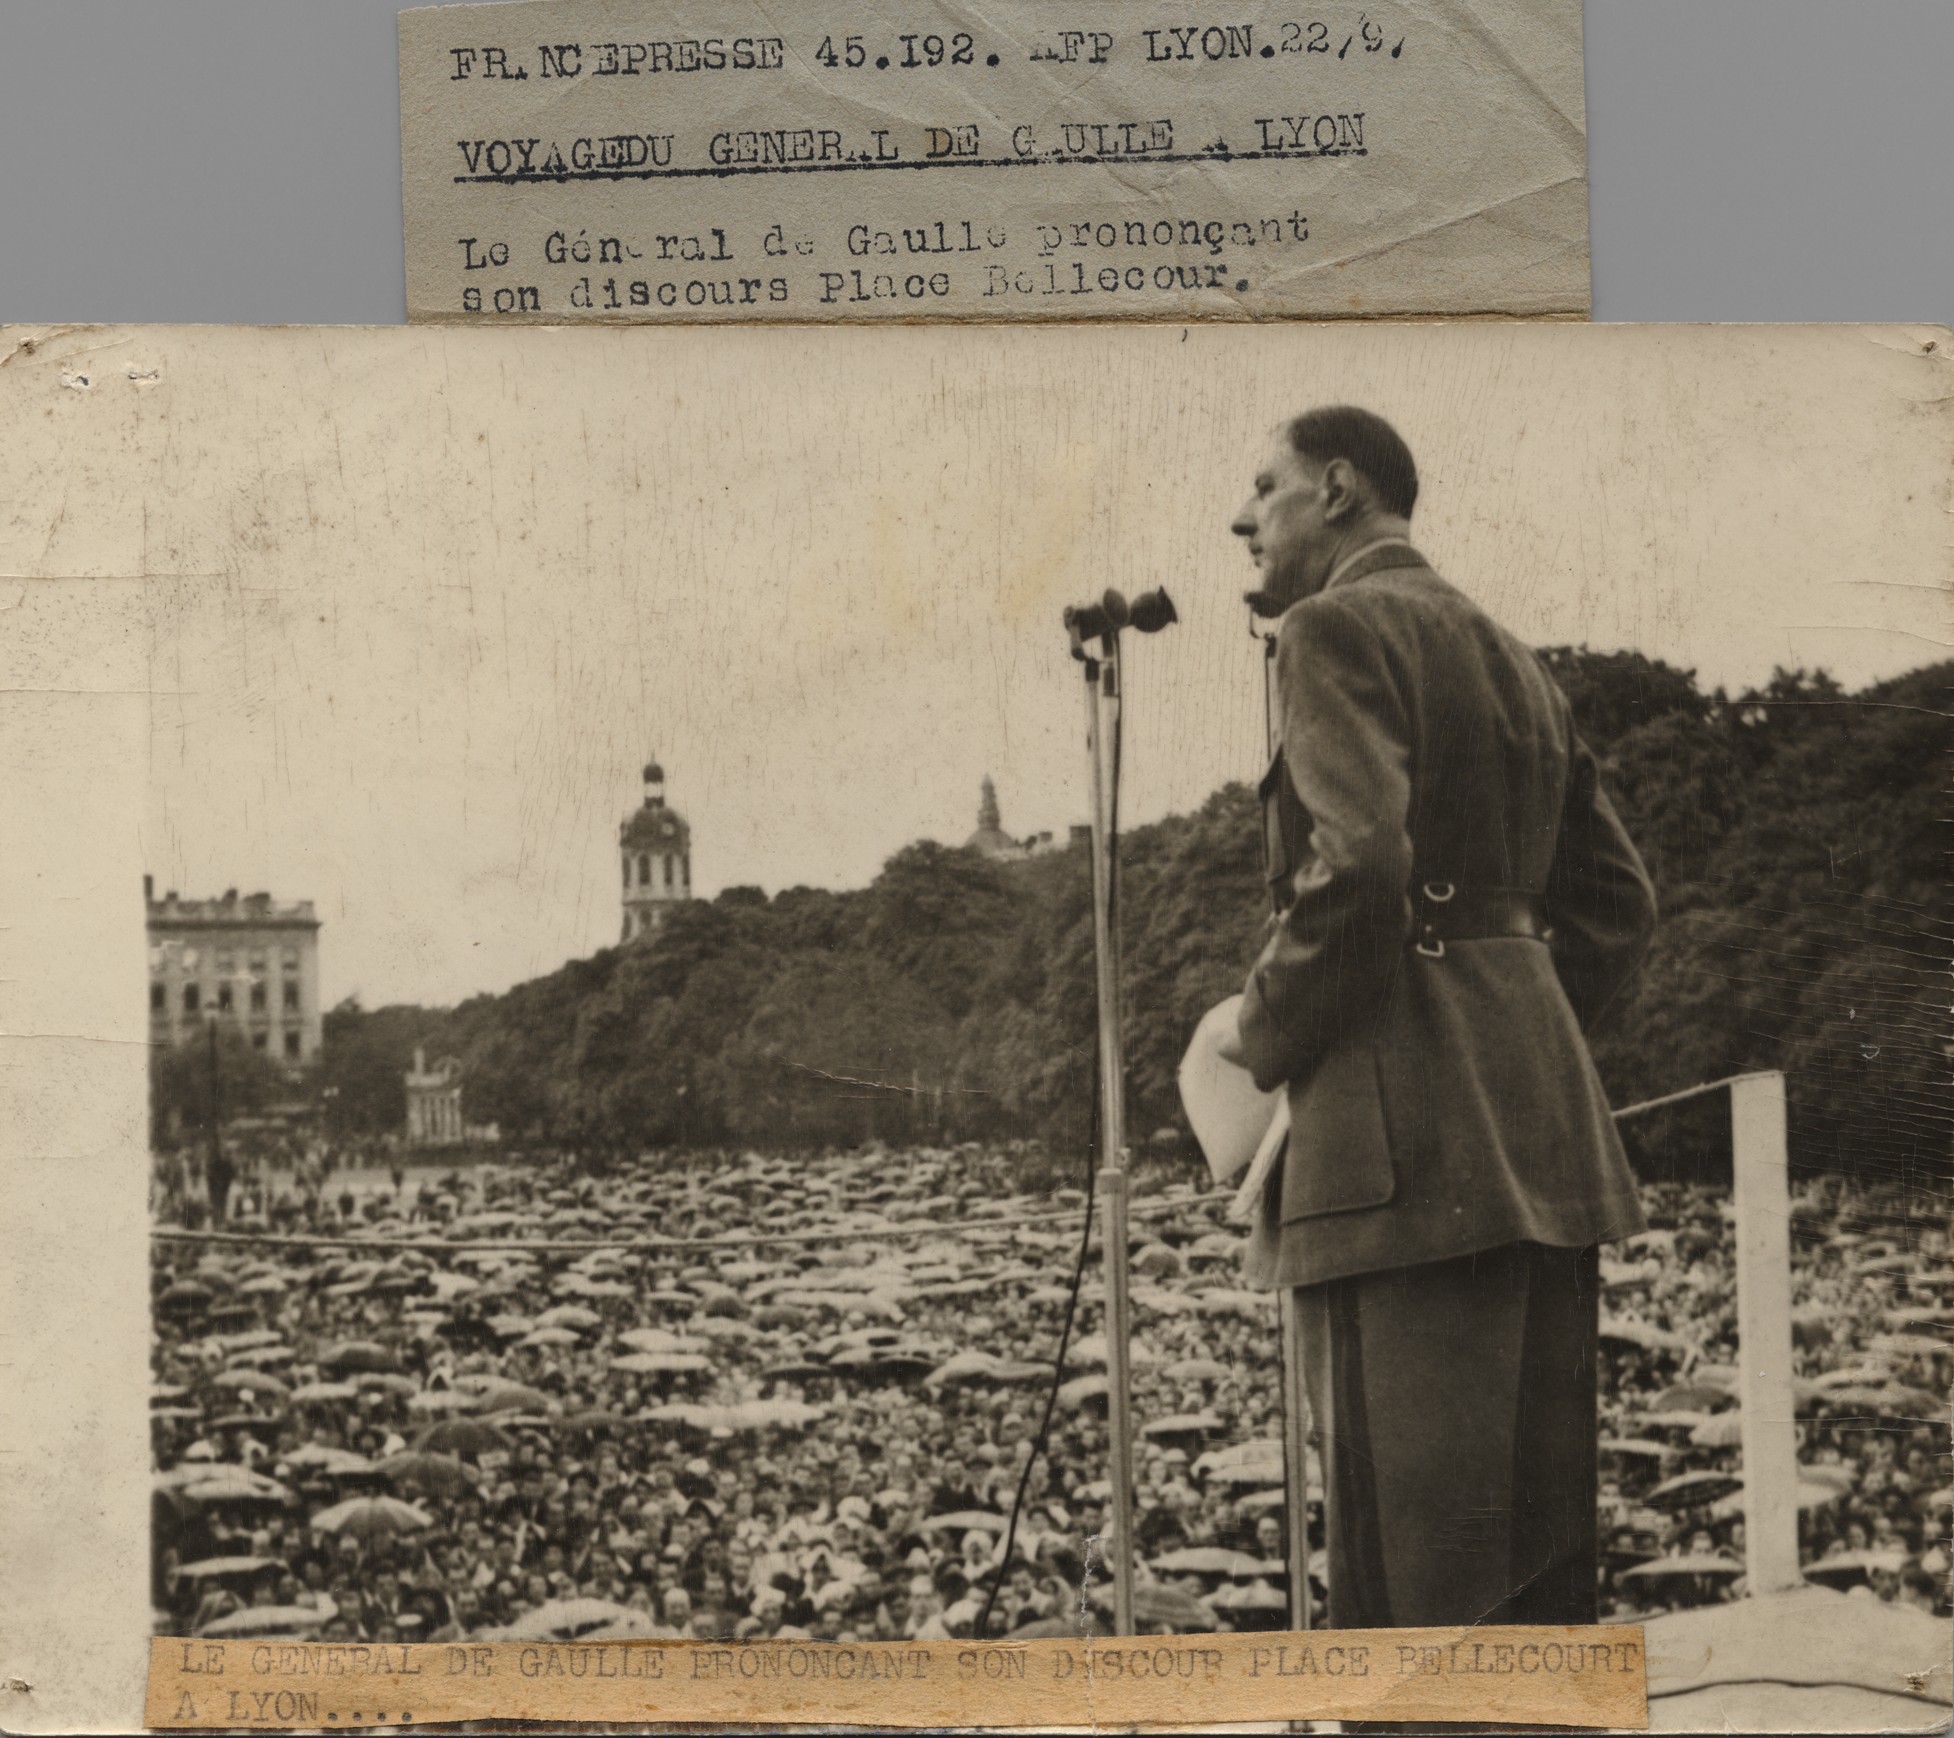 Discours de de Gaulle place Bellecour : tirage photo NB de l'AFP (20/09/1947, cote : 1PH/8356)